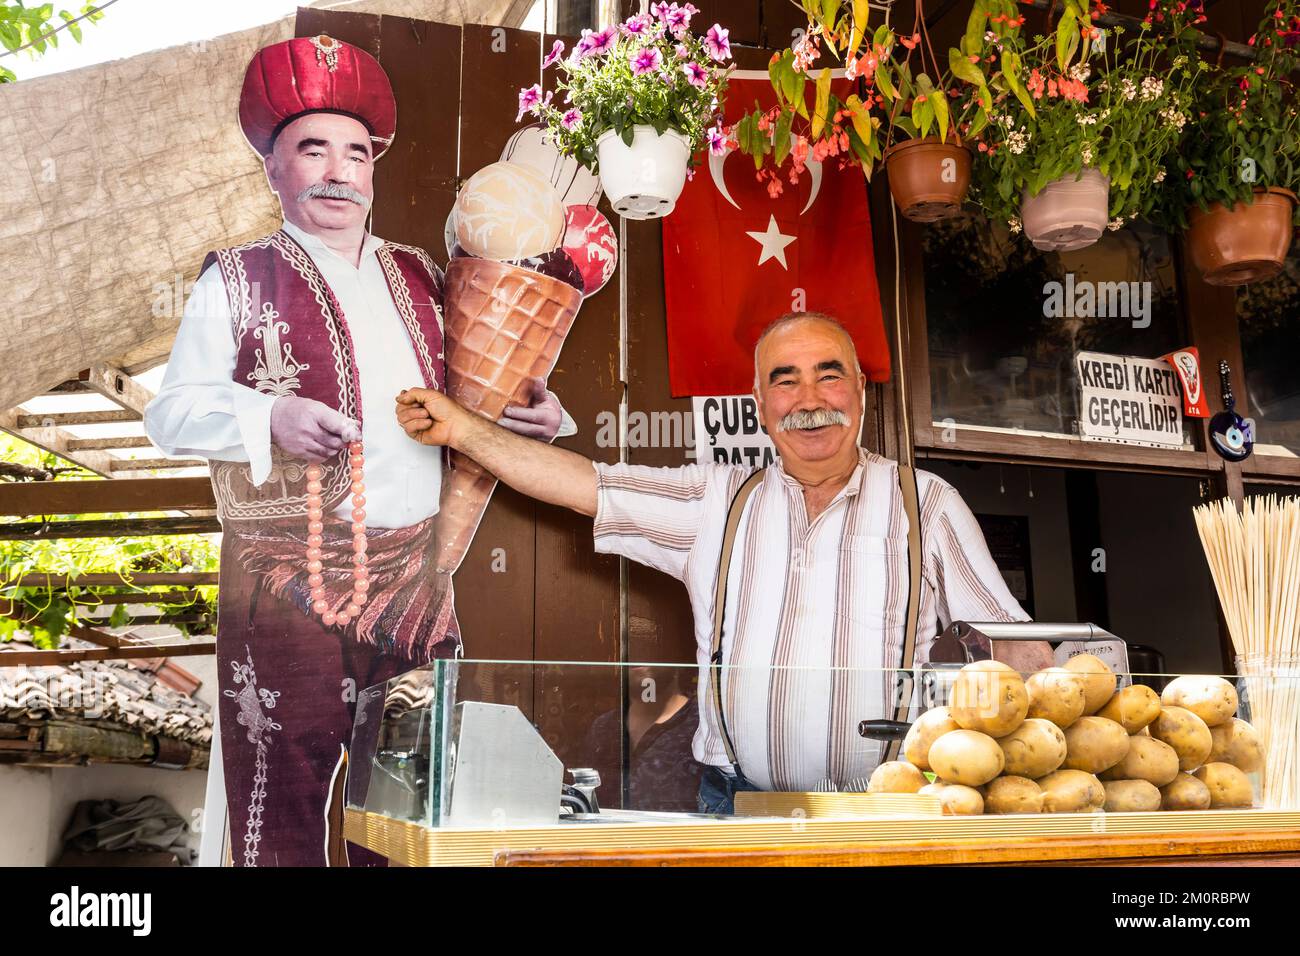 Ville de Safranbolu, propriétaire du magasin de glace, rue bazzar, province de Karabuk, Anatolie, Turquie, Asie mineure, Asie Banque D'Images